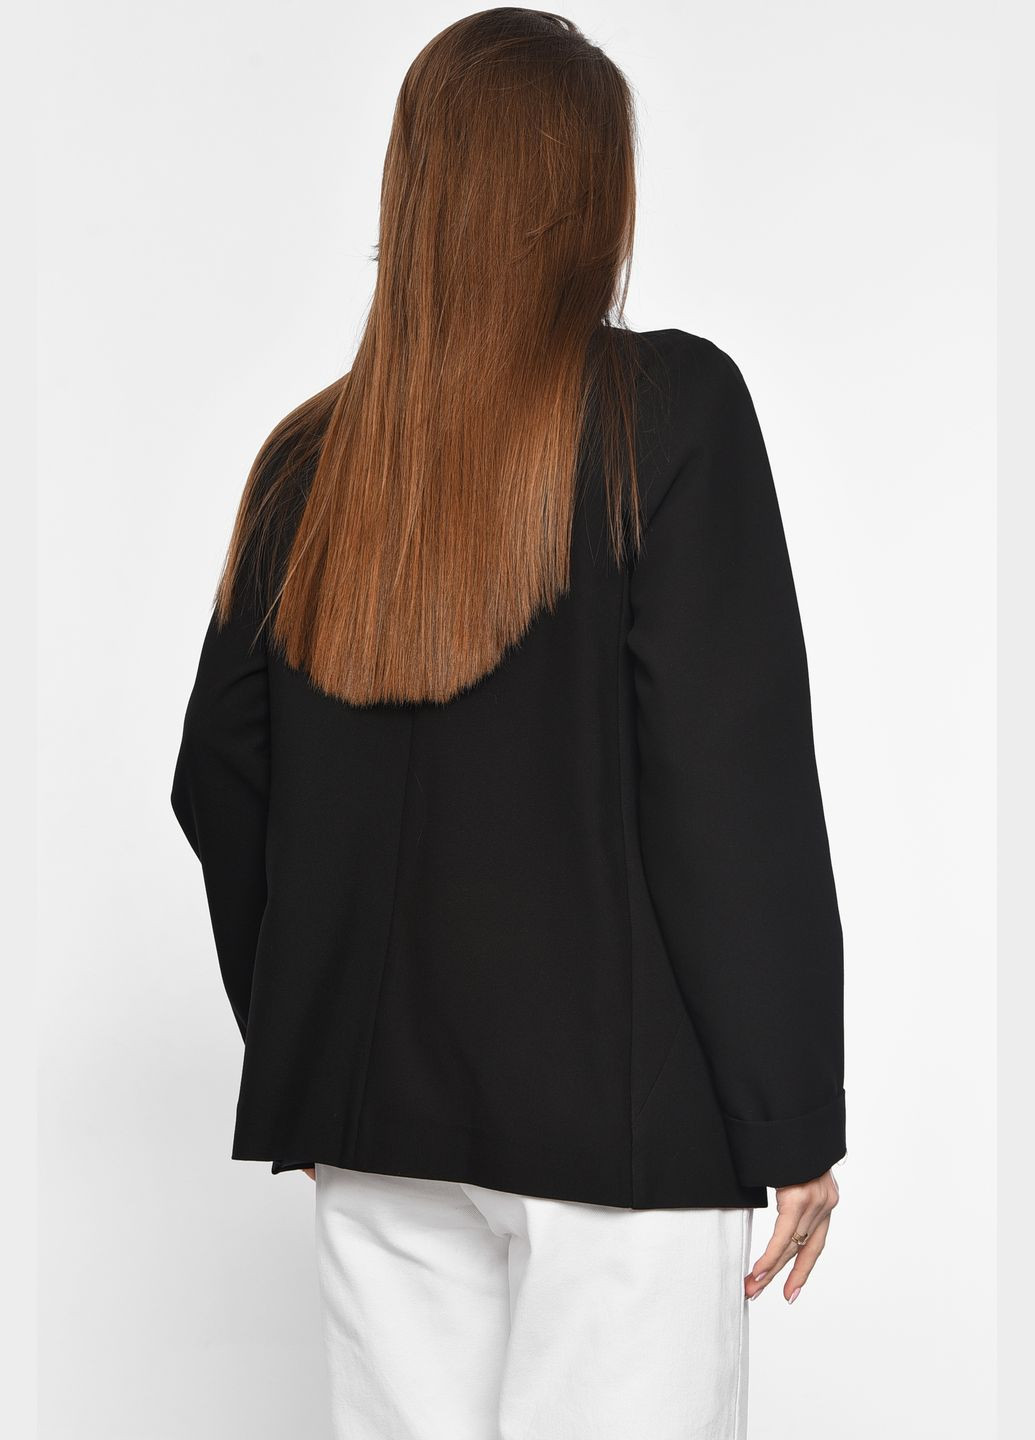 Черный женский пиджак женский черного цвета Let's Shop с орнаментом - демисезонный